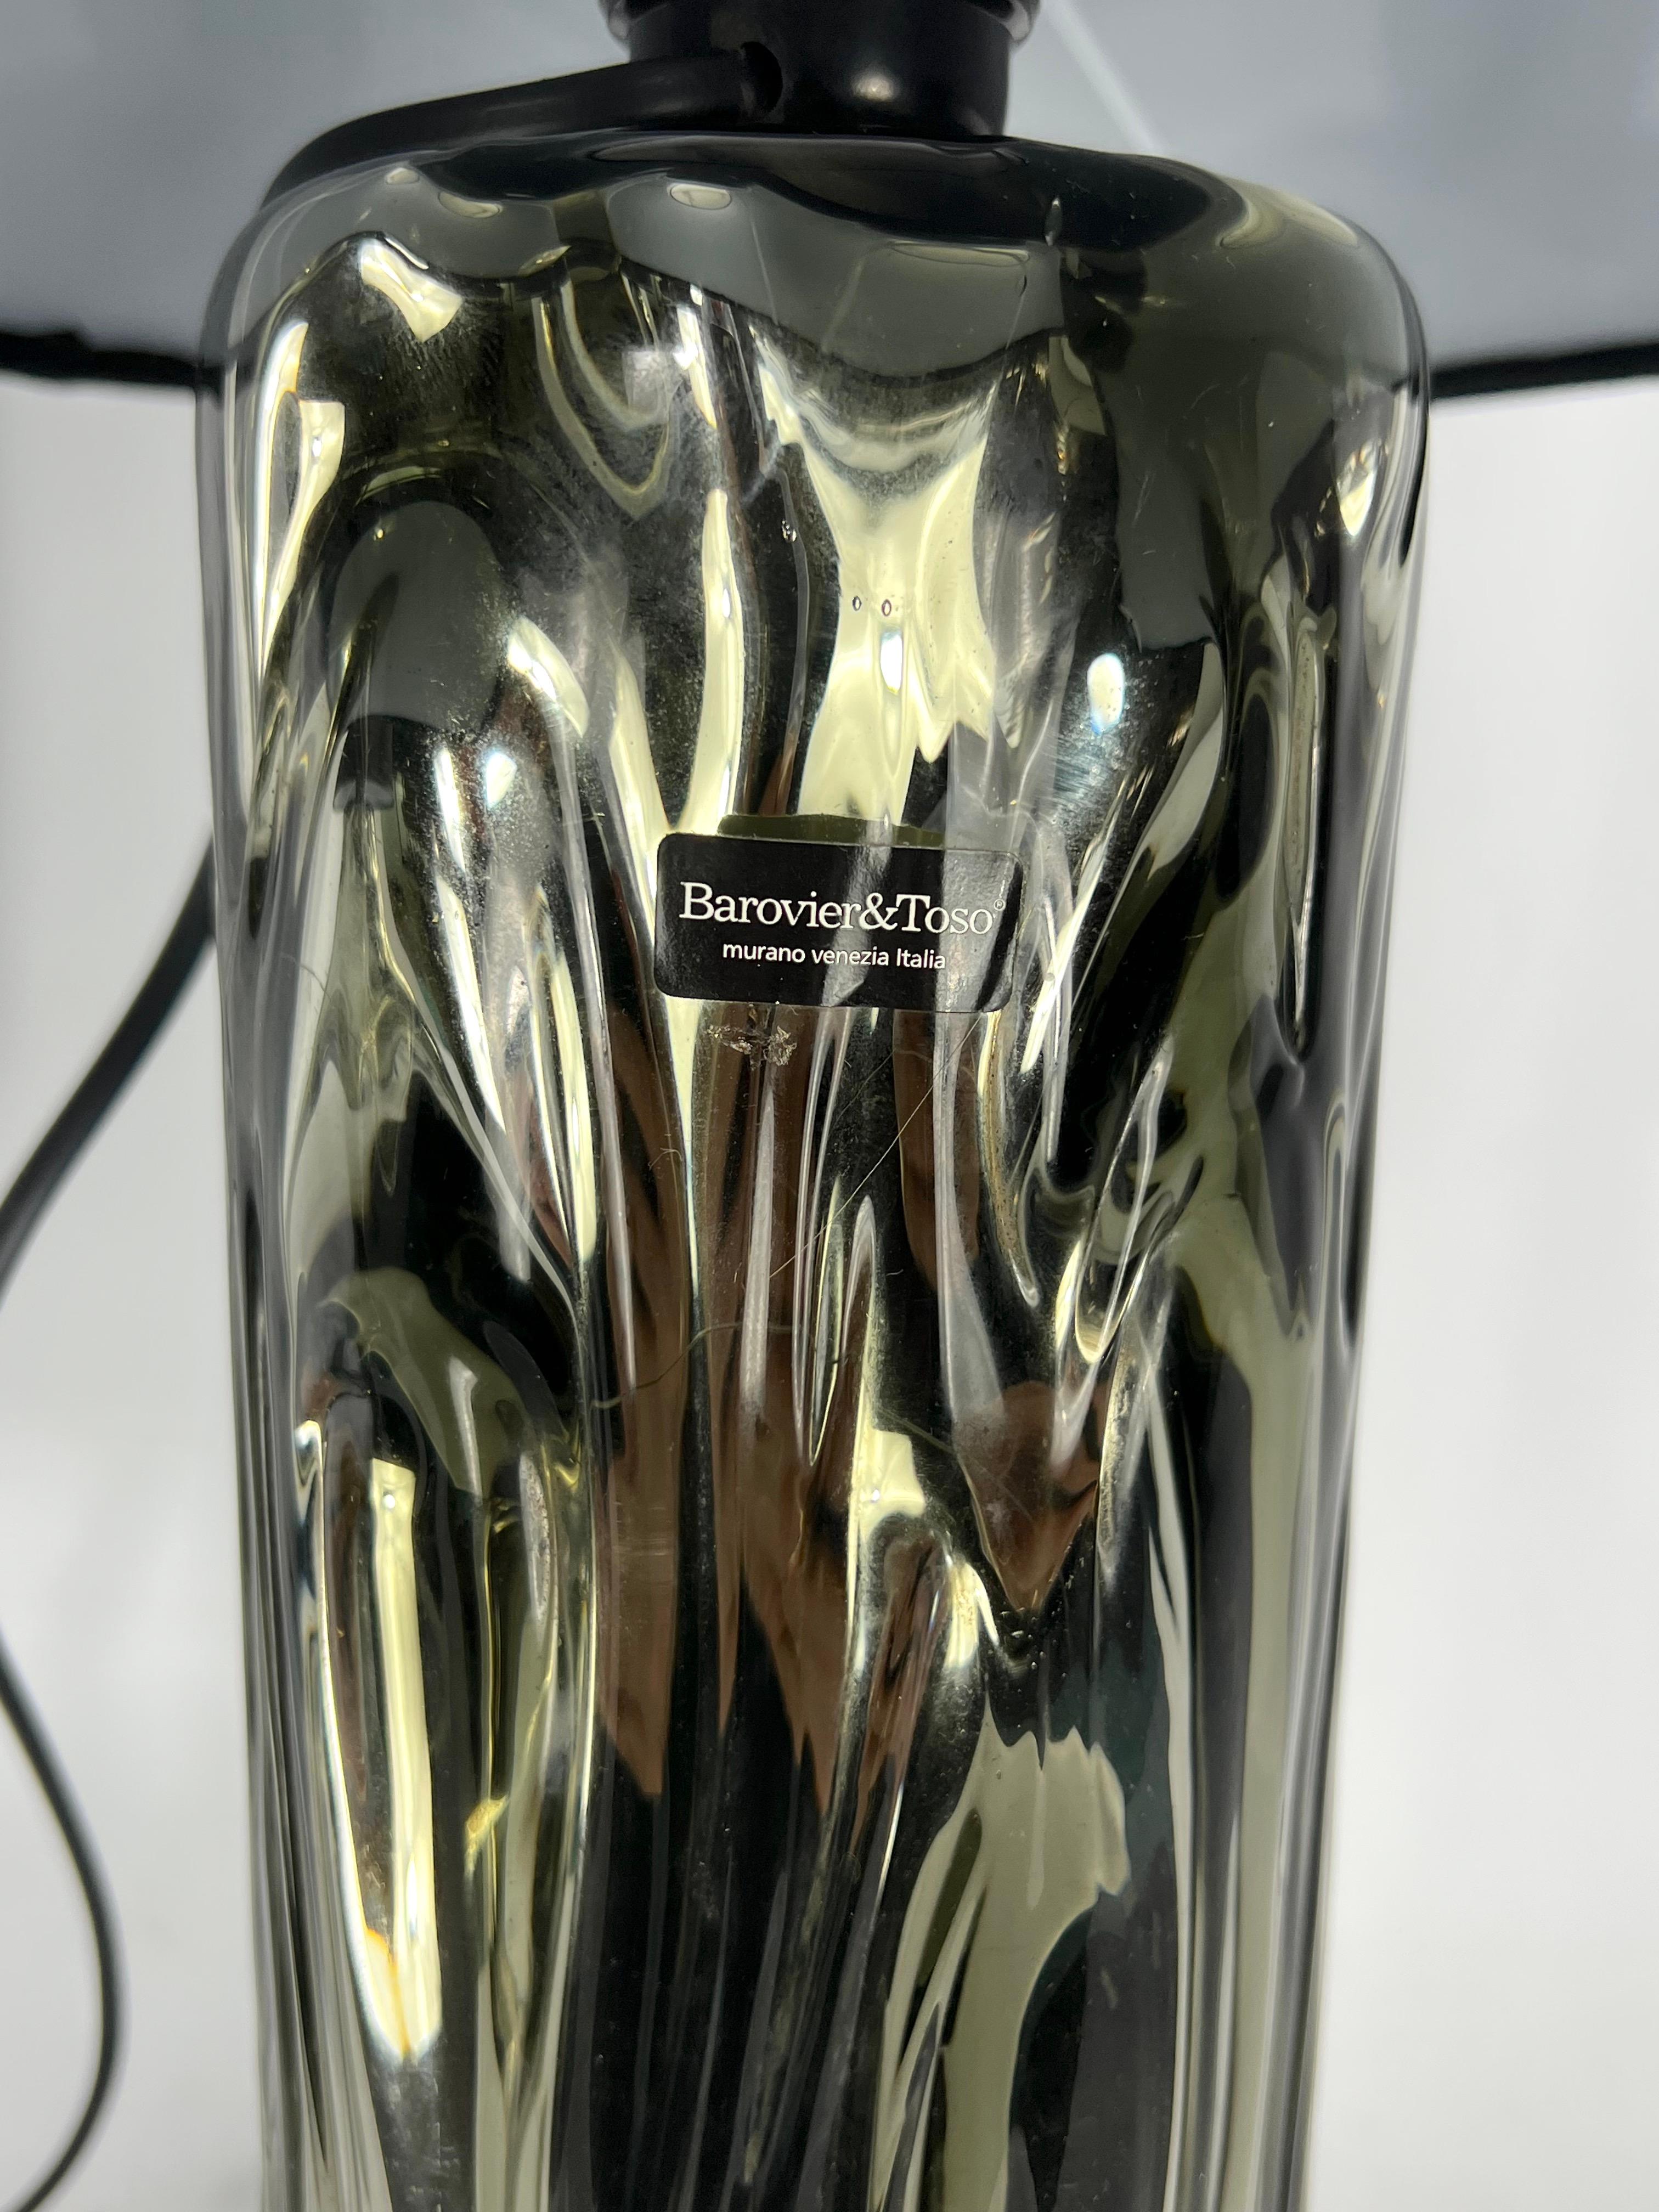 Verre de Murano Barovier & Toso, paire de lampes de bureau en verre de Murano des années 70. Étiqueté